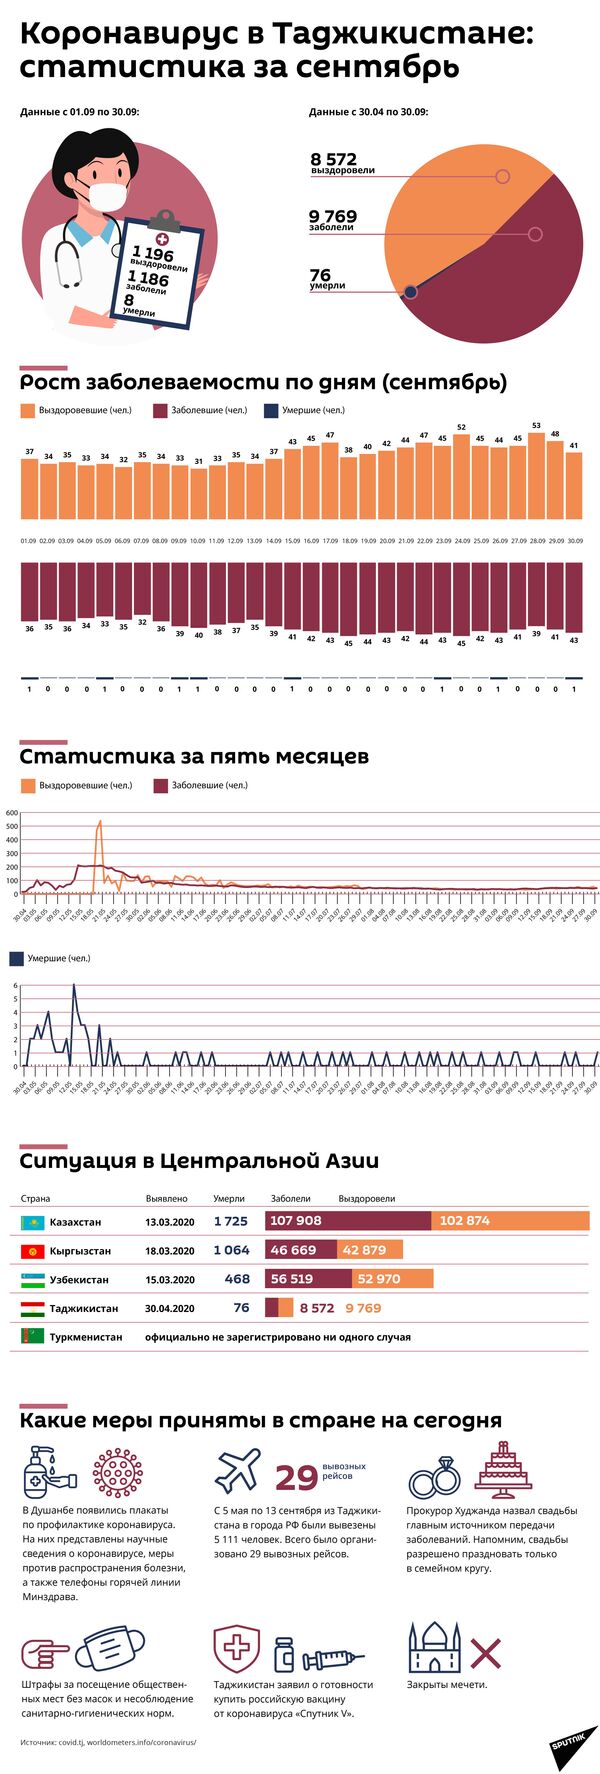 Коронавирус в Таджикистане статистика за сентябрь - Sputnik Таджикистан